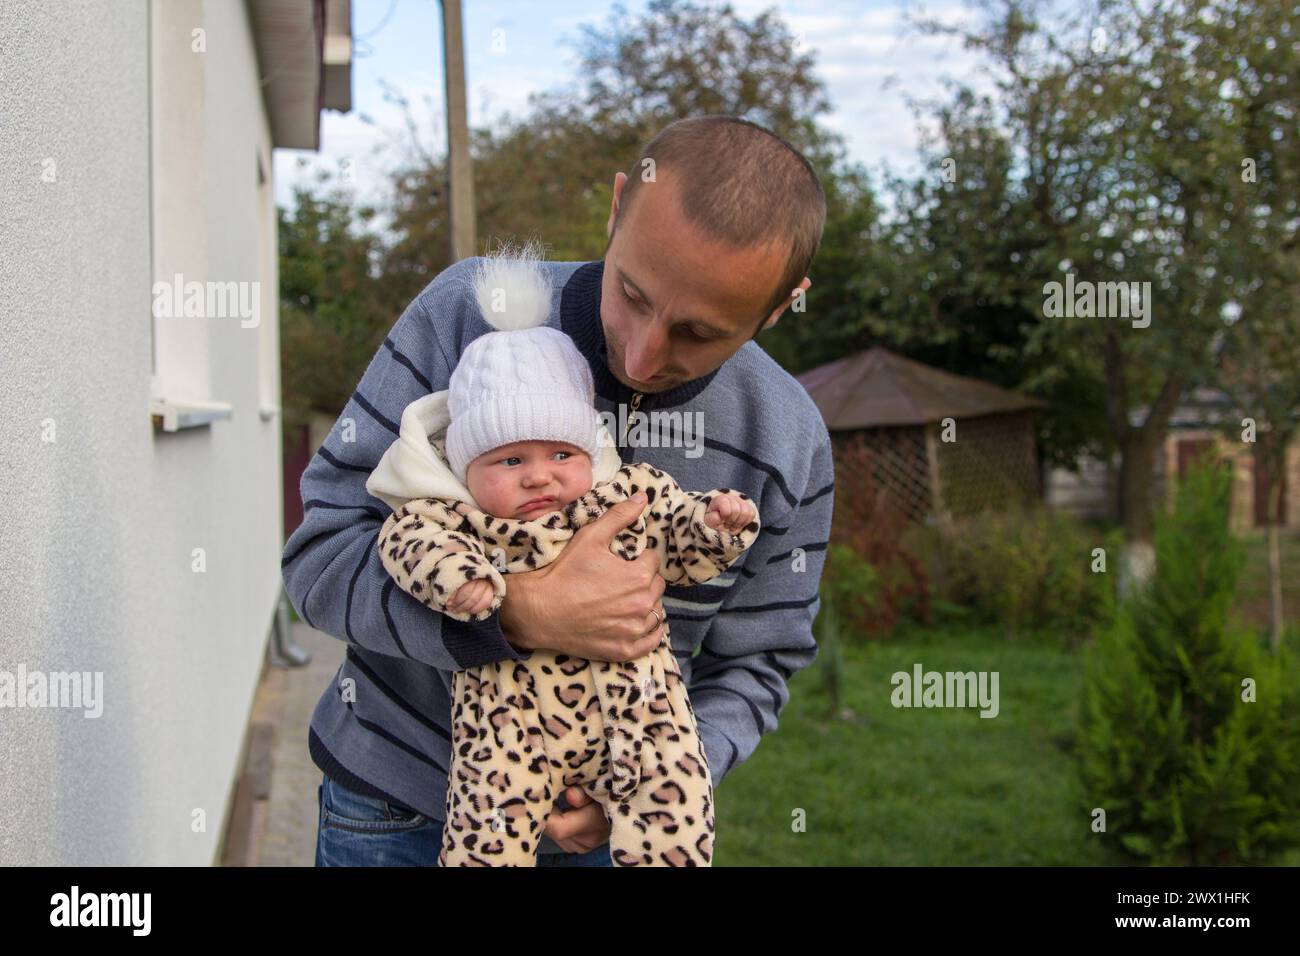 Der Vater sieht das Baby in seinen Armen an, das Baby ist unglücklich Stockfoto